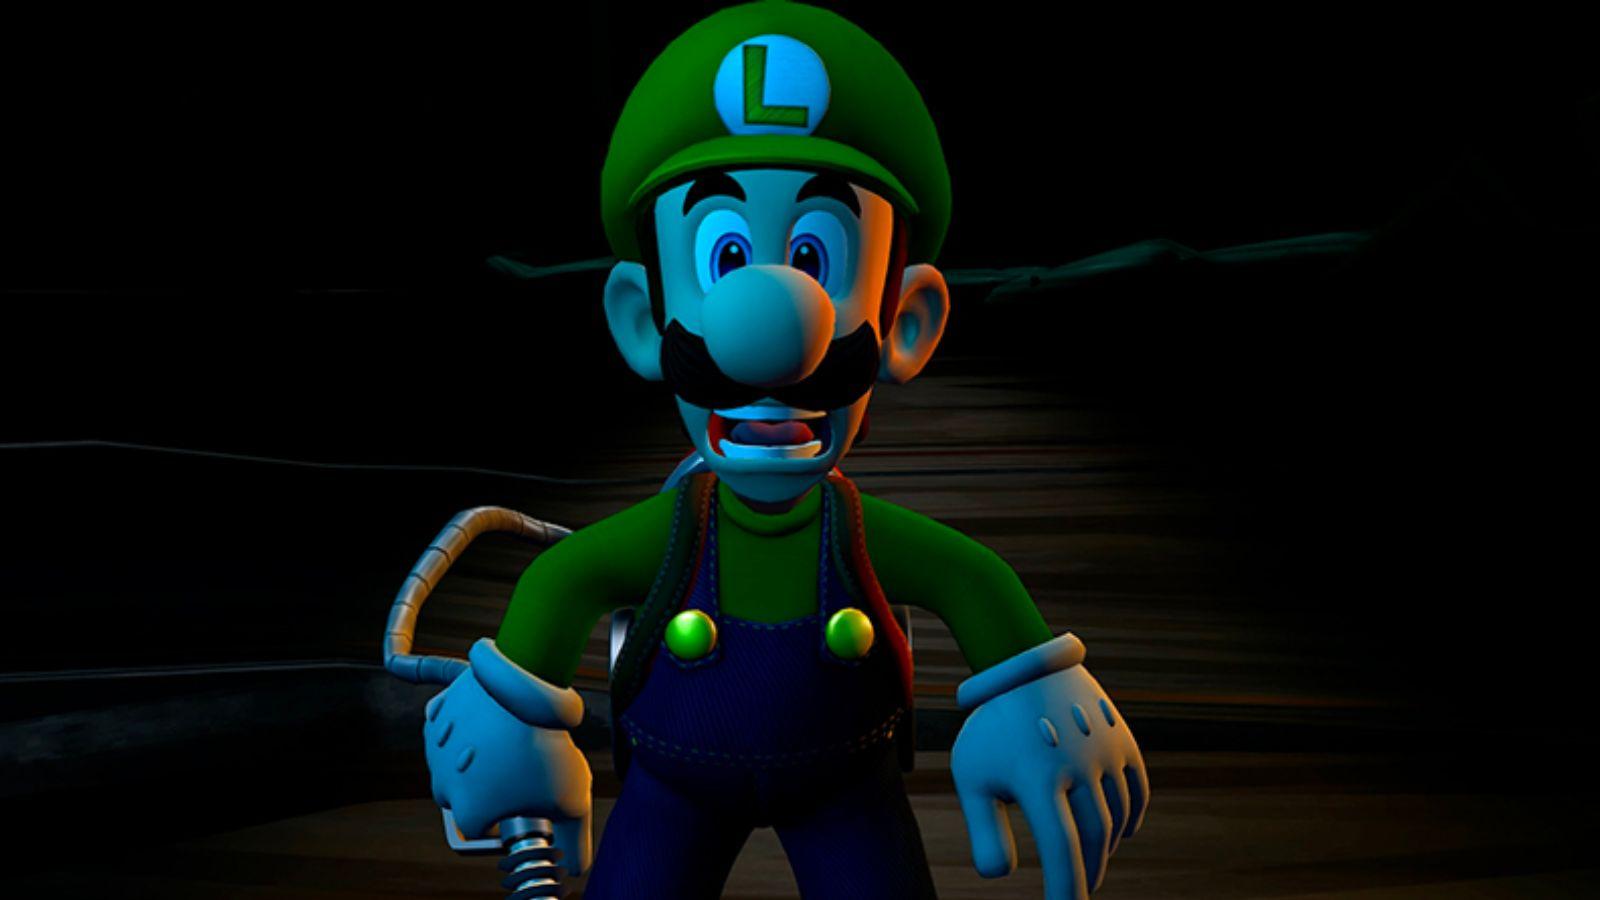 Luigi's Mansion Dark Moon remake announced